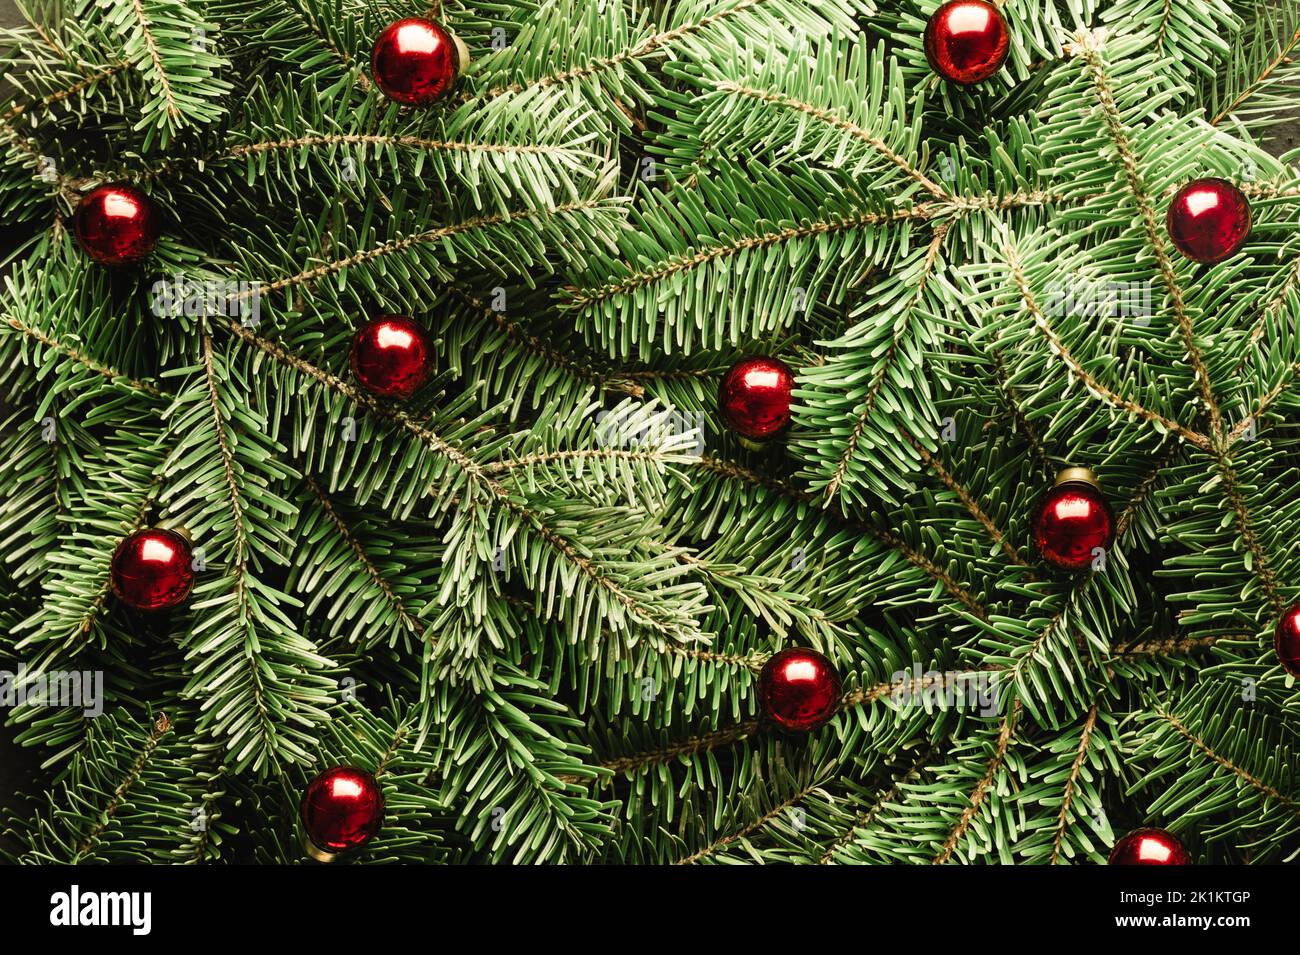 Kreative Weihnachtsferien Hintergrund mit Tannenzweigen und roten weihnachtskugeln Nahaufnahme. Flach liegend, Draufsicht. Frohe Weihnachten Stockfoto